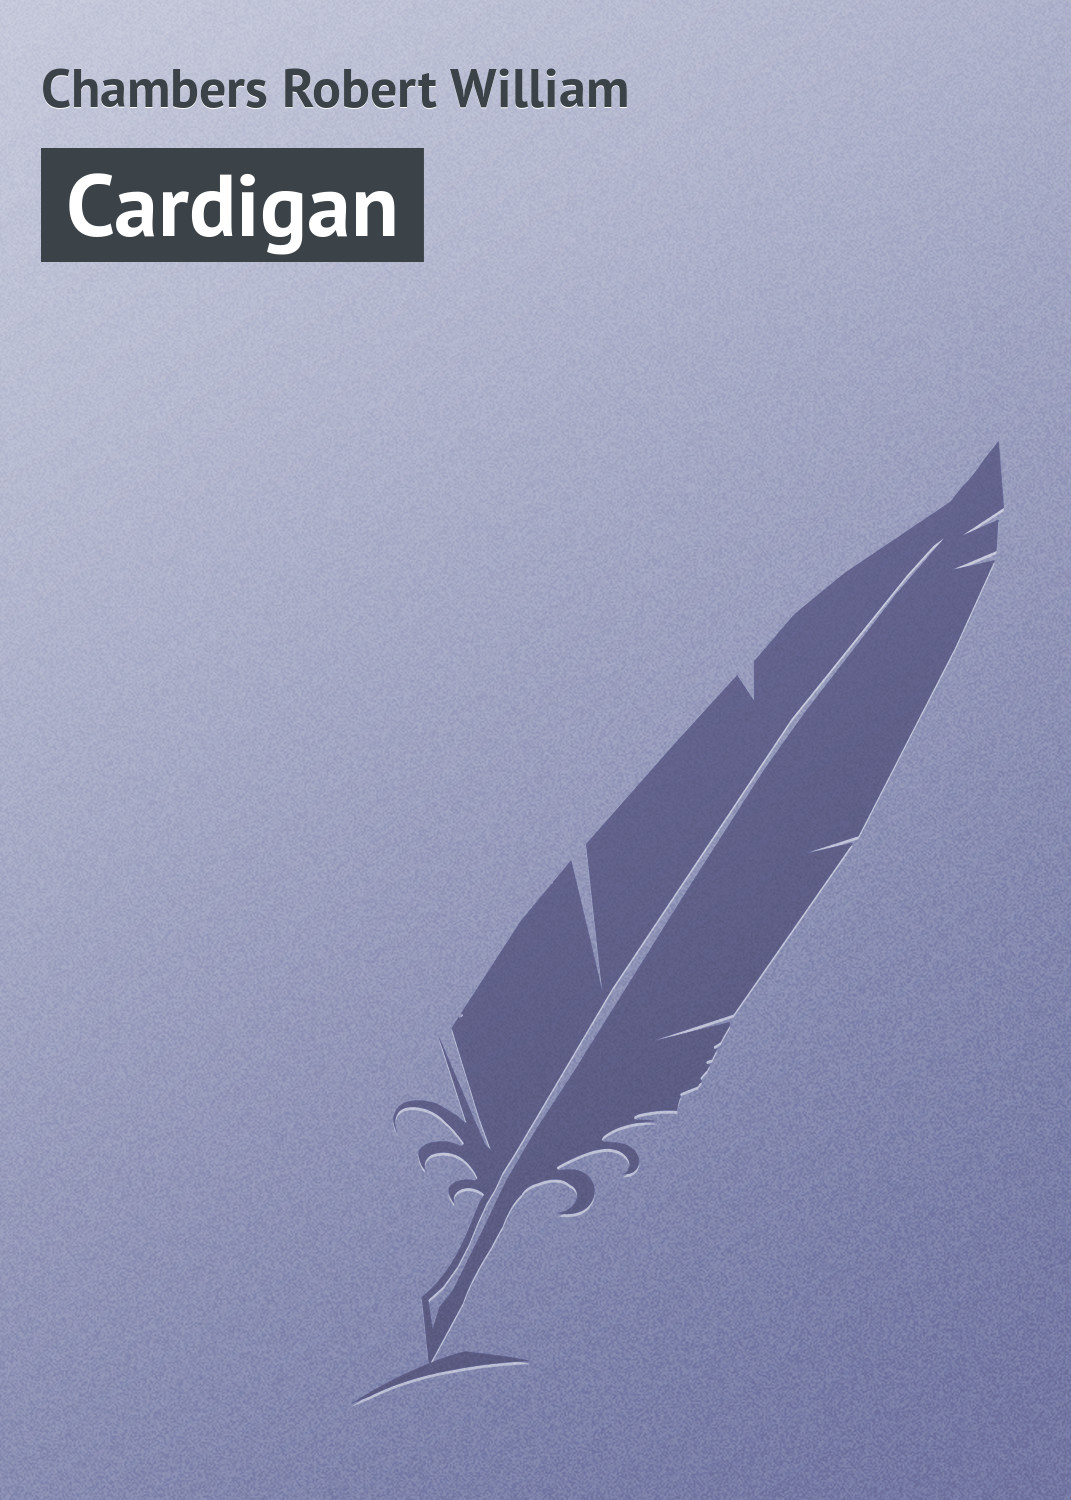 Книга Cardigan из серии , созданная Robert Chambers, может относится к жанру Зарубежная классика. Стоимость электронной книги Cardigan с идентификатором 23161795 составляет 5.99 руб.